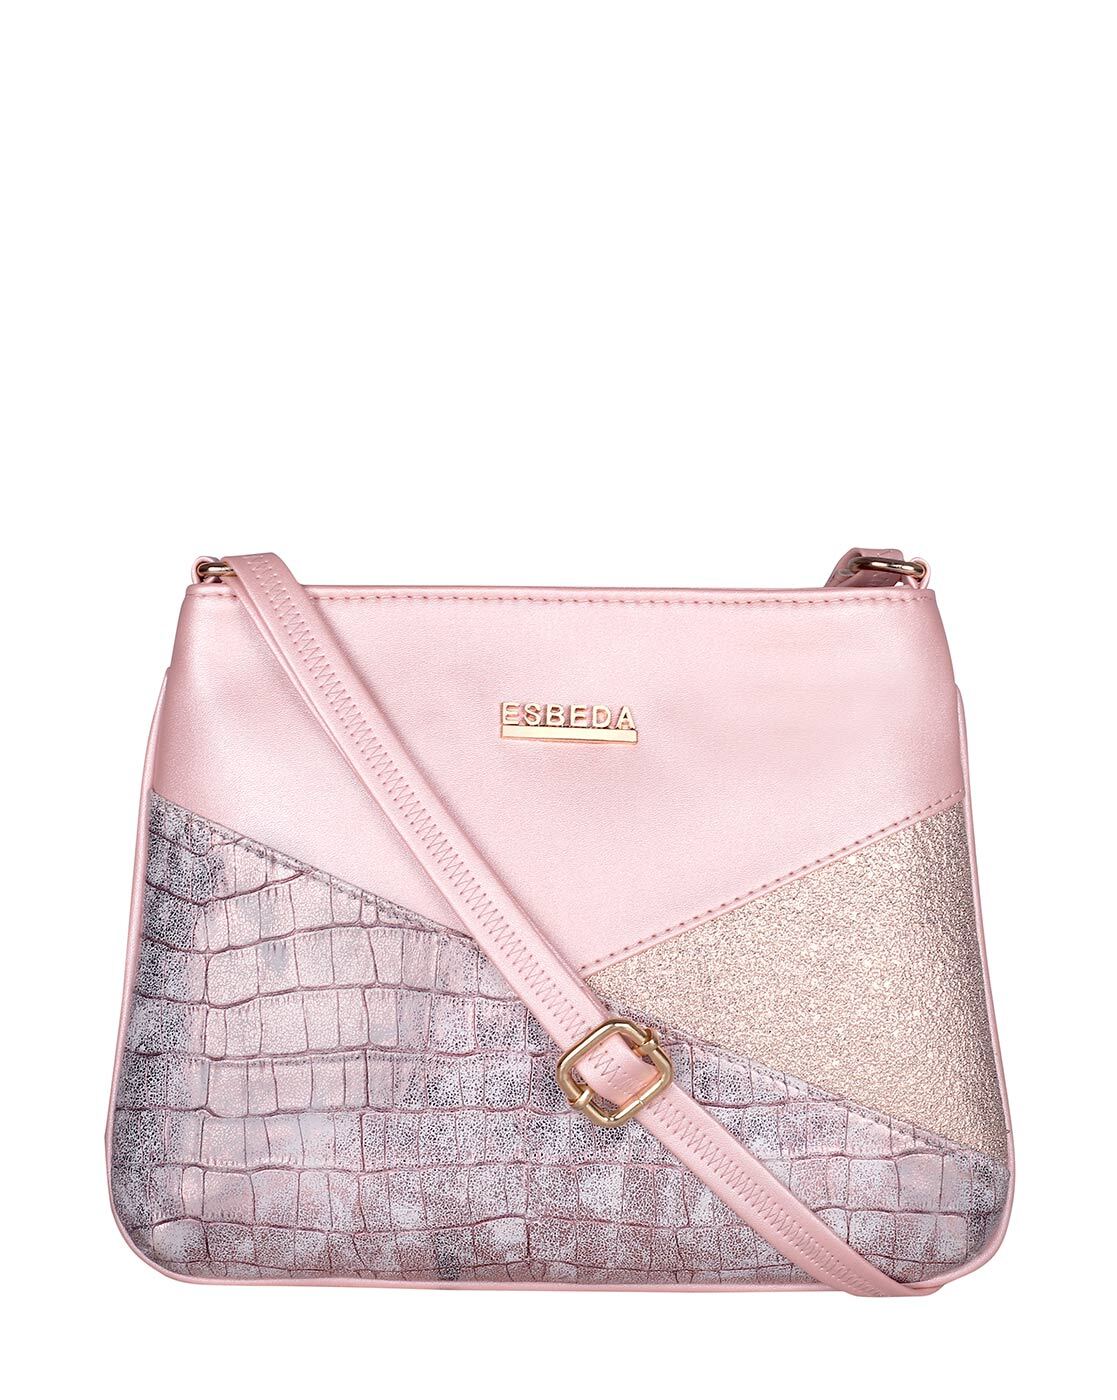 Buy ESBEDA Brown Solid Sling Bag - Handbags for Women 2610791 | Myntra